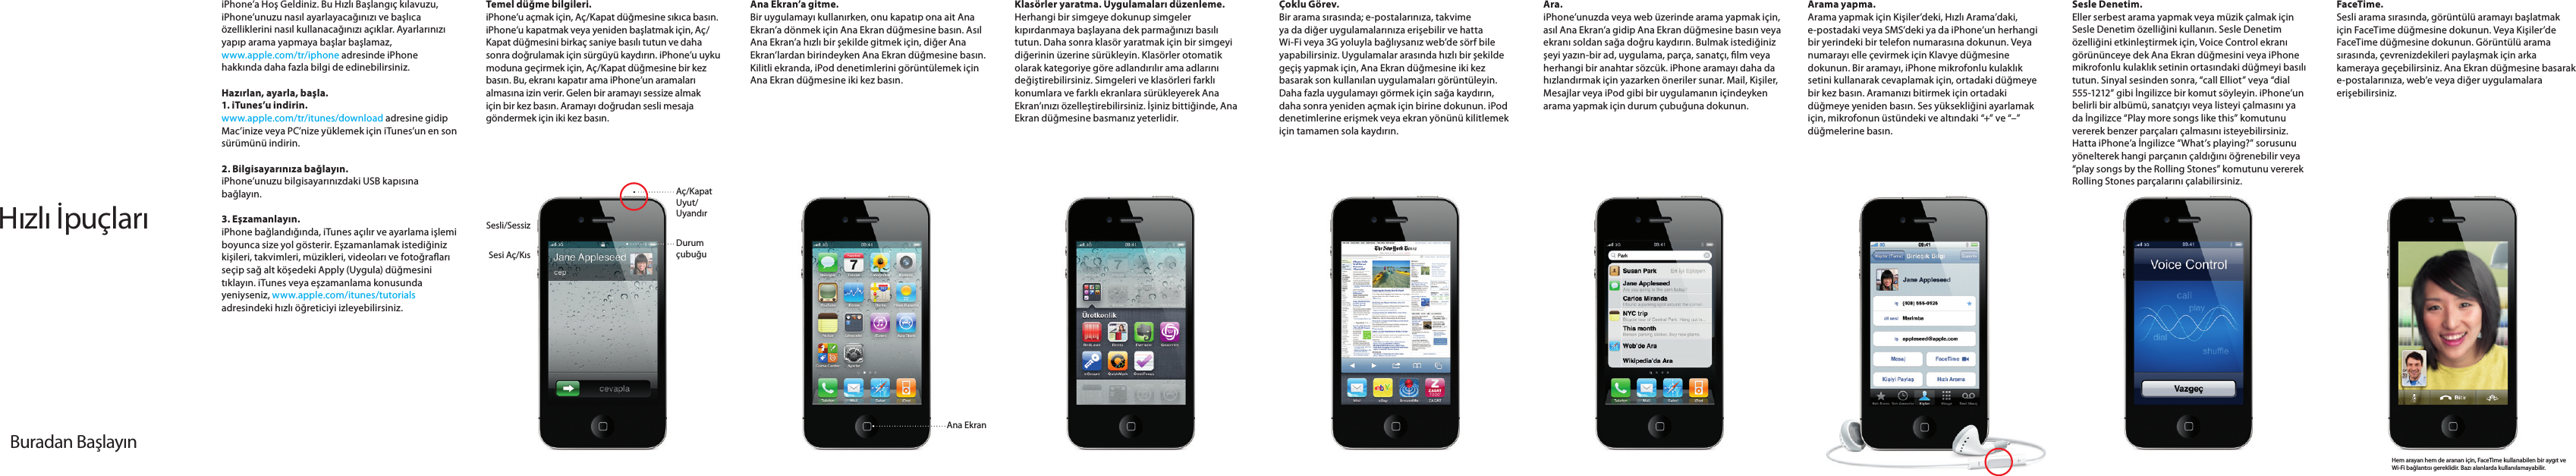 Apple IPhone 4 User Manual I Phone Hızlı İpuçları Finger Tips TU